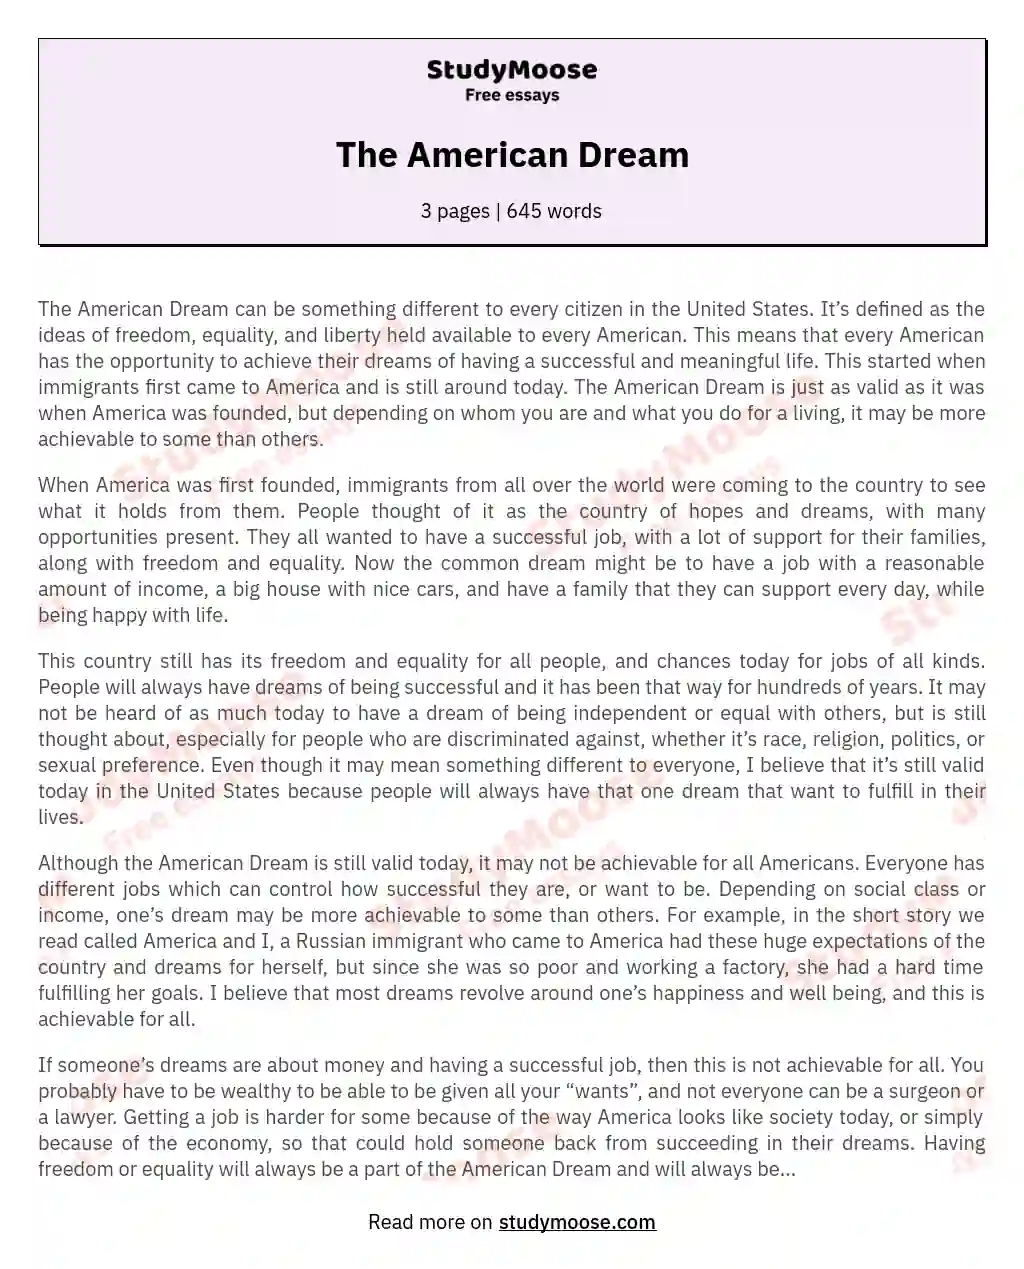 The American Dream essay